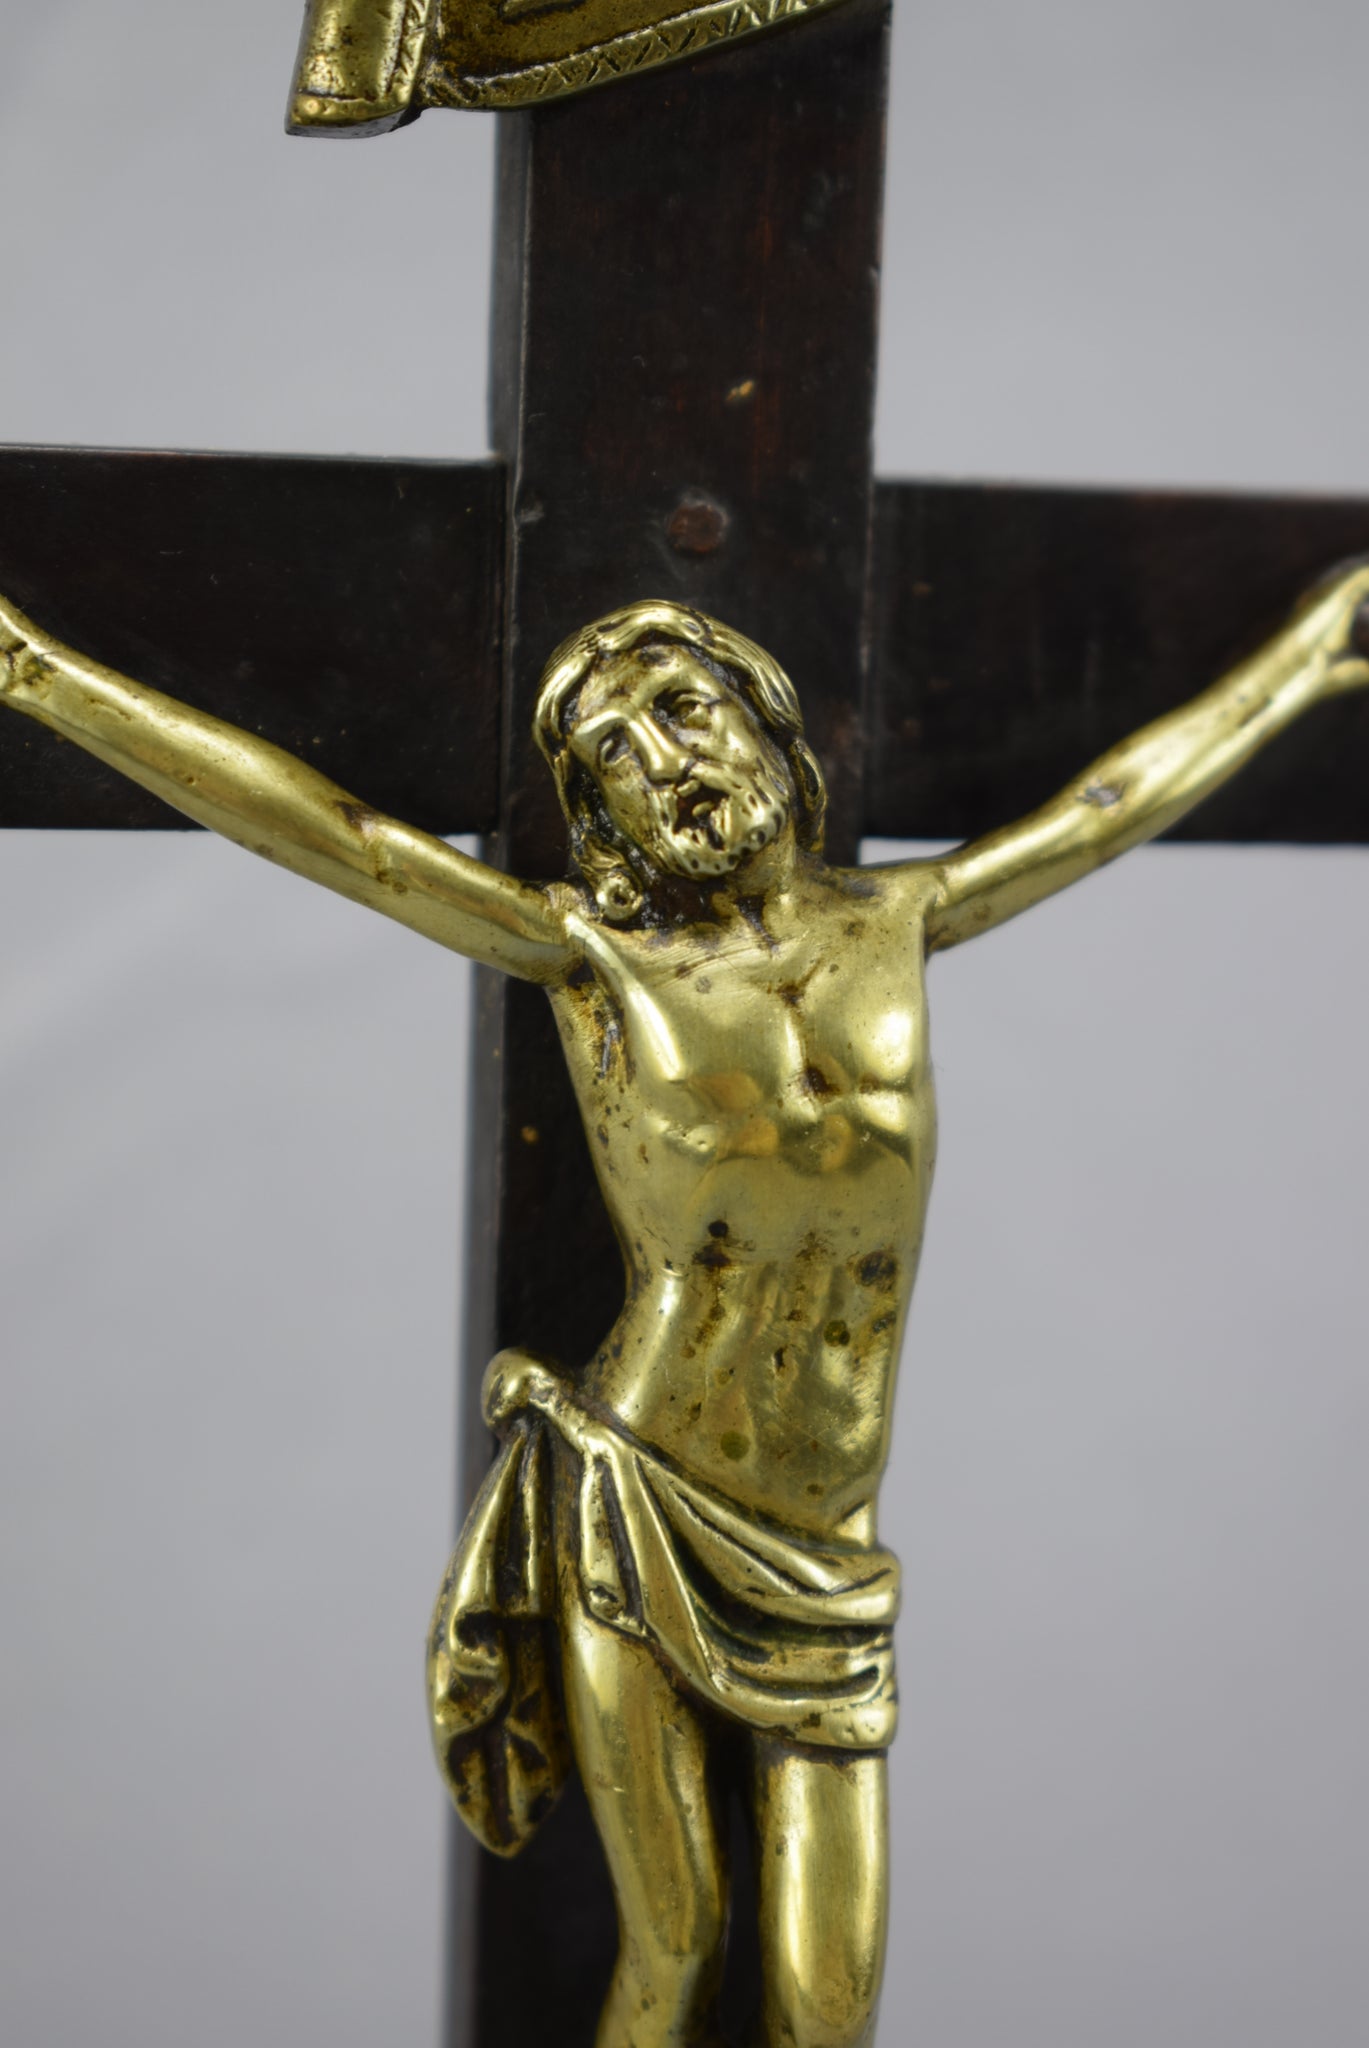 19th.C Standing Crucifix - Charmantiques